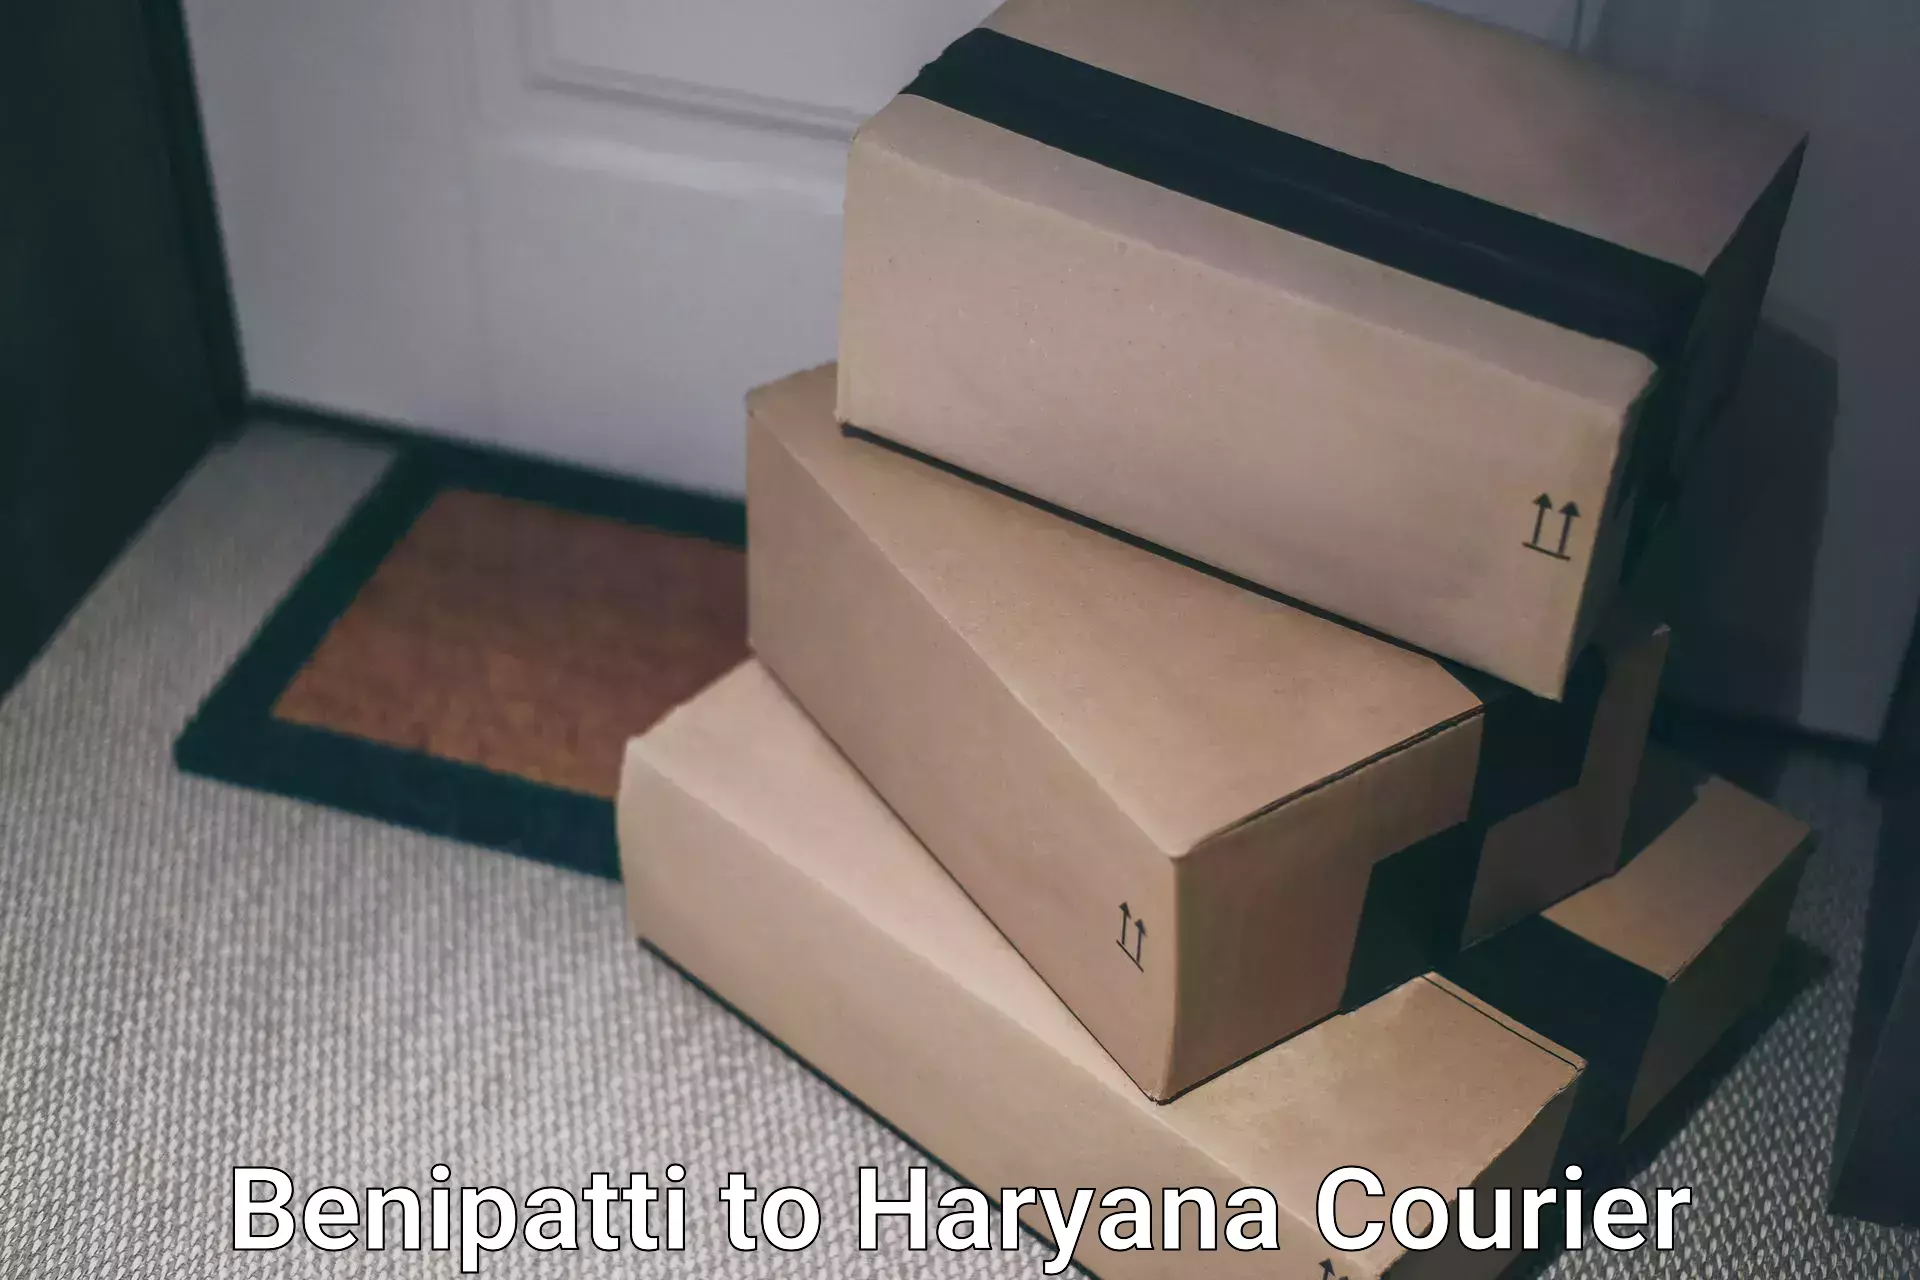 Express package handling Benipatti to NCR Haryana